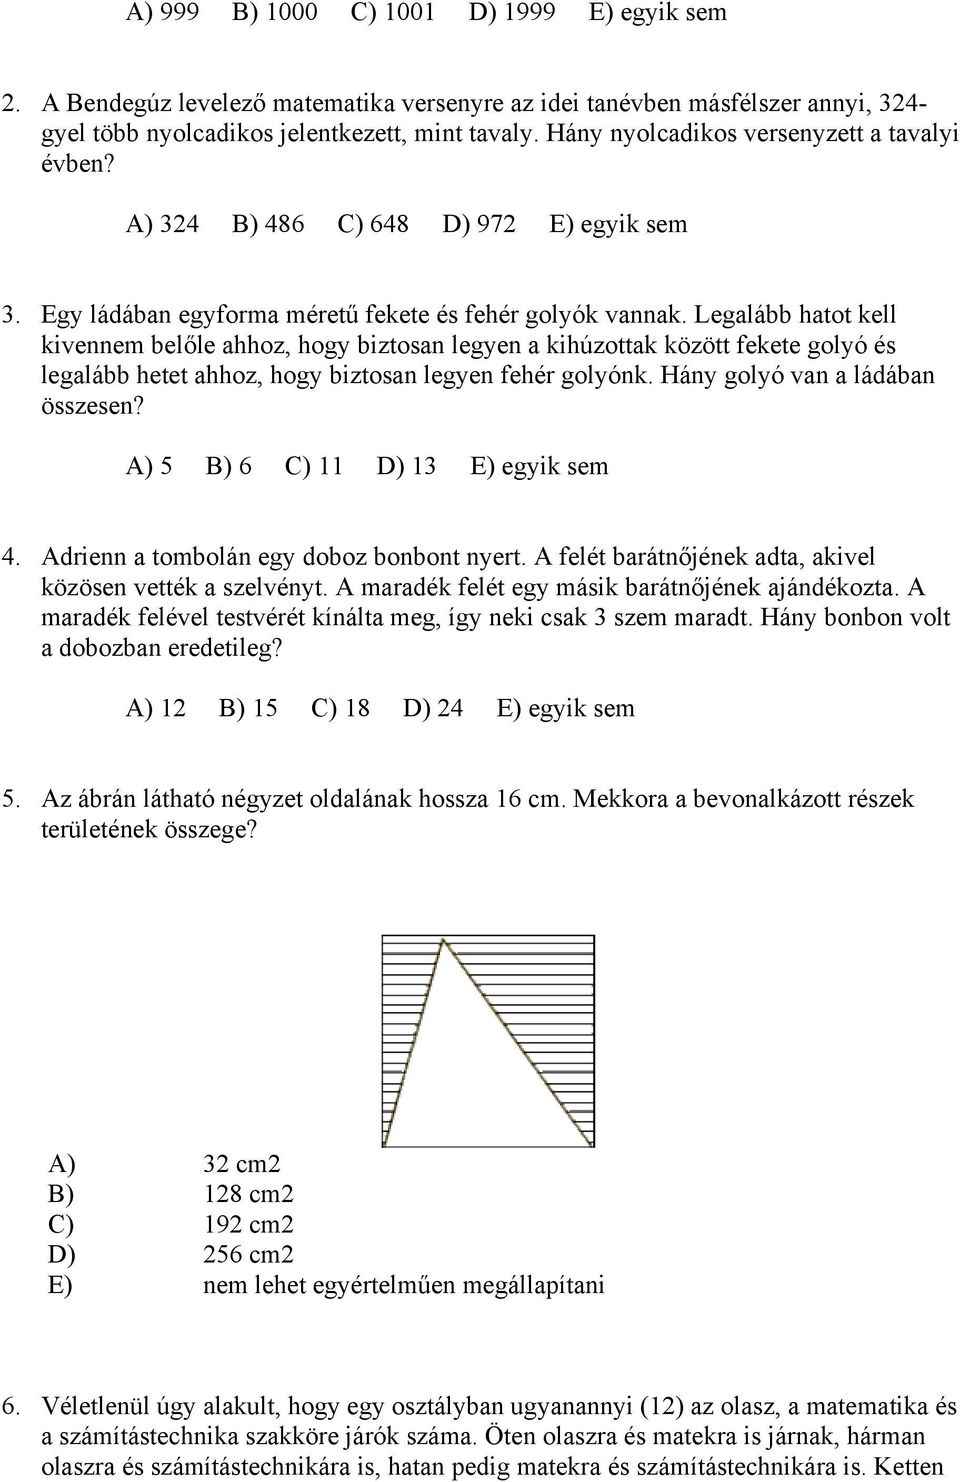 Matematika feladatok - PDF Ingyenes letöltés